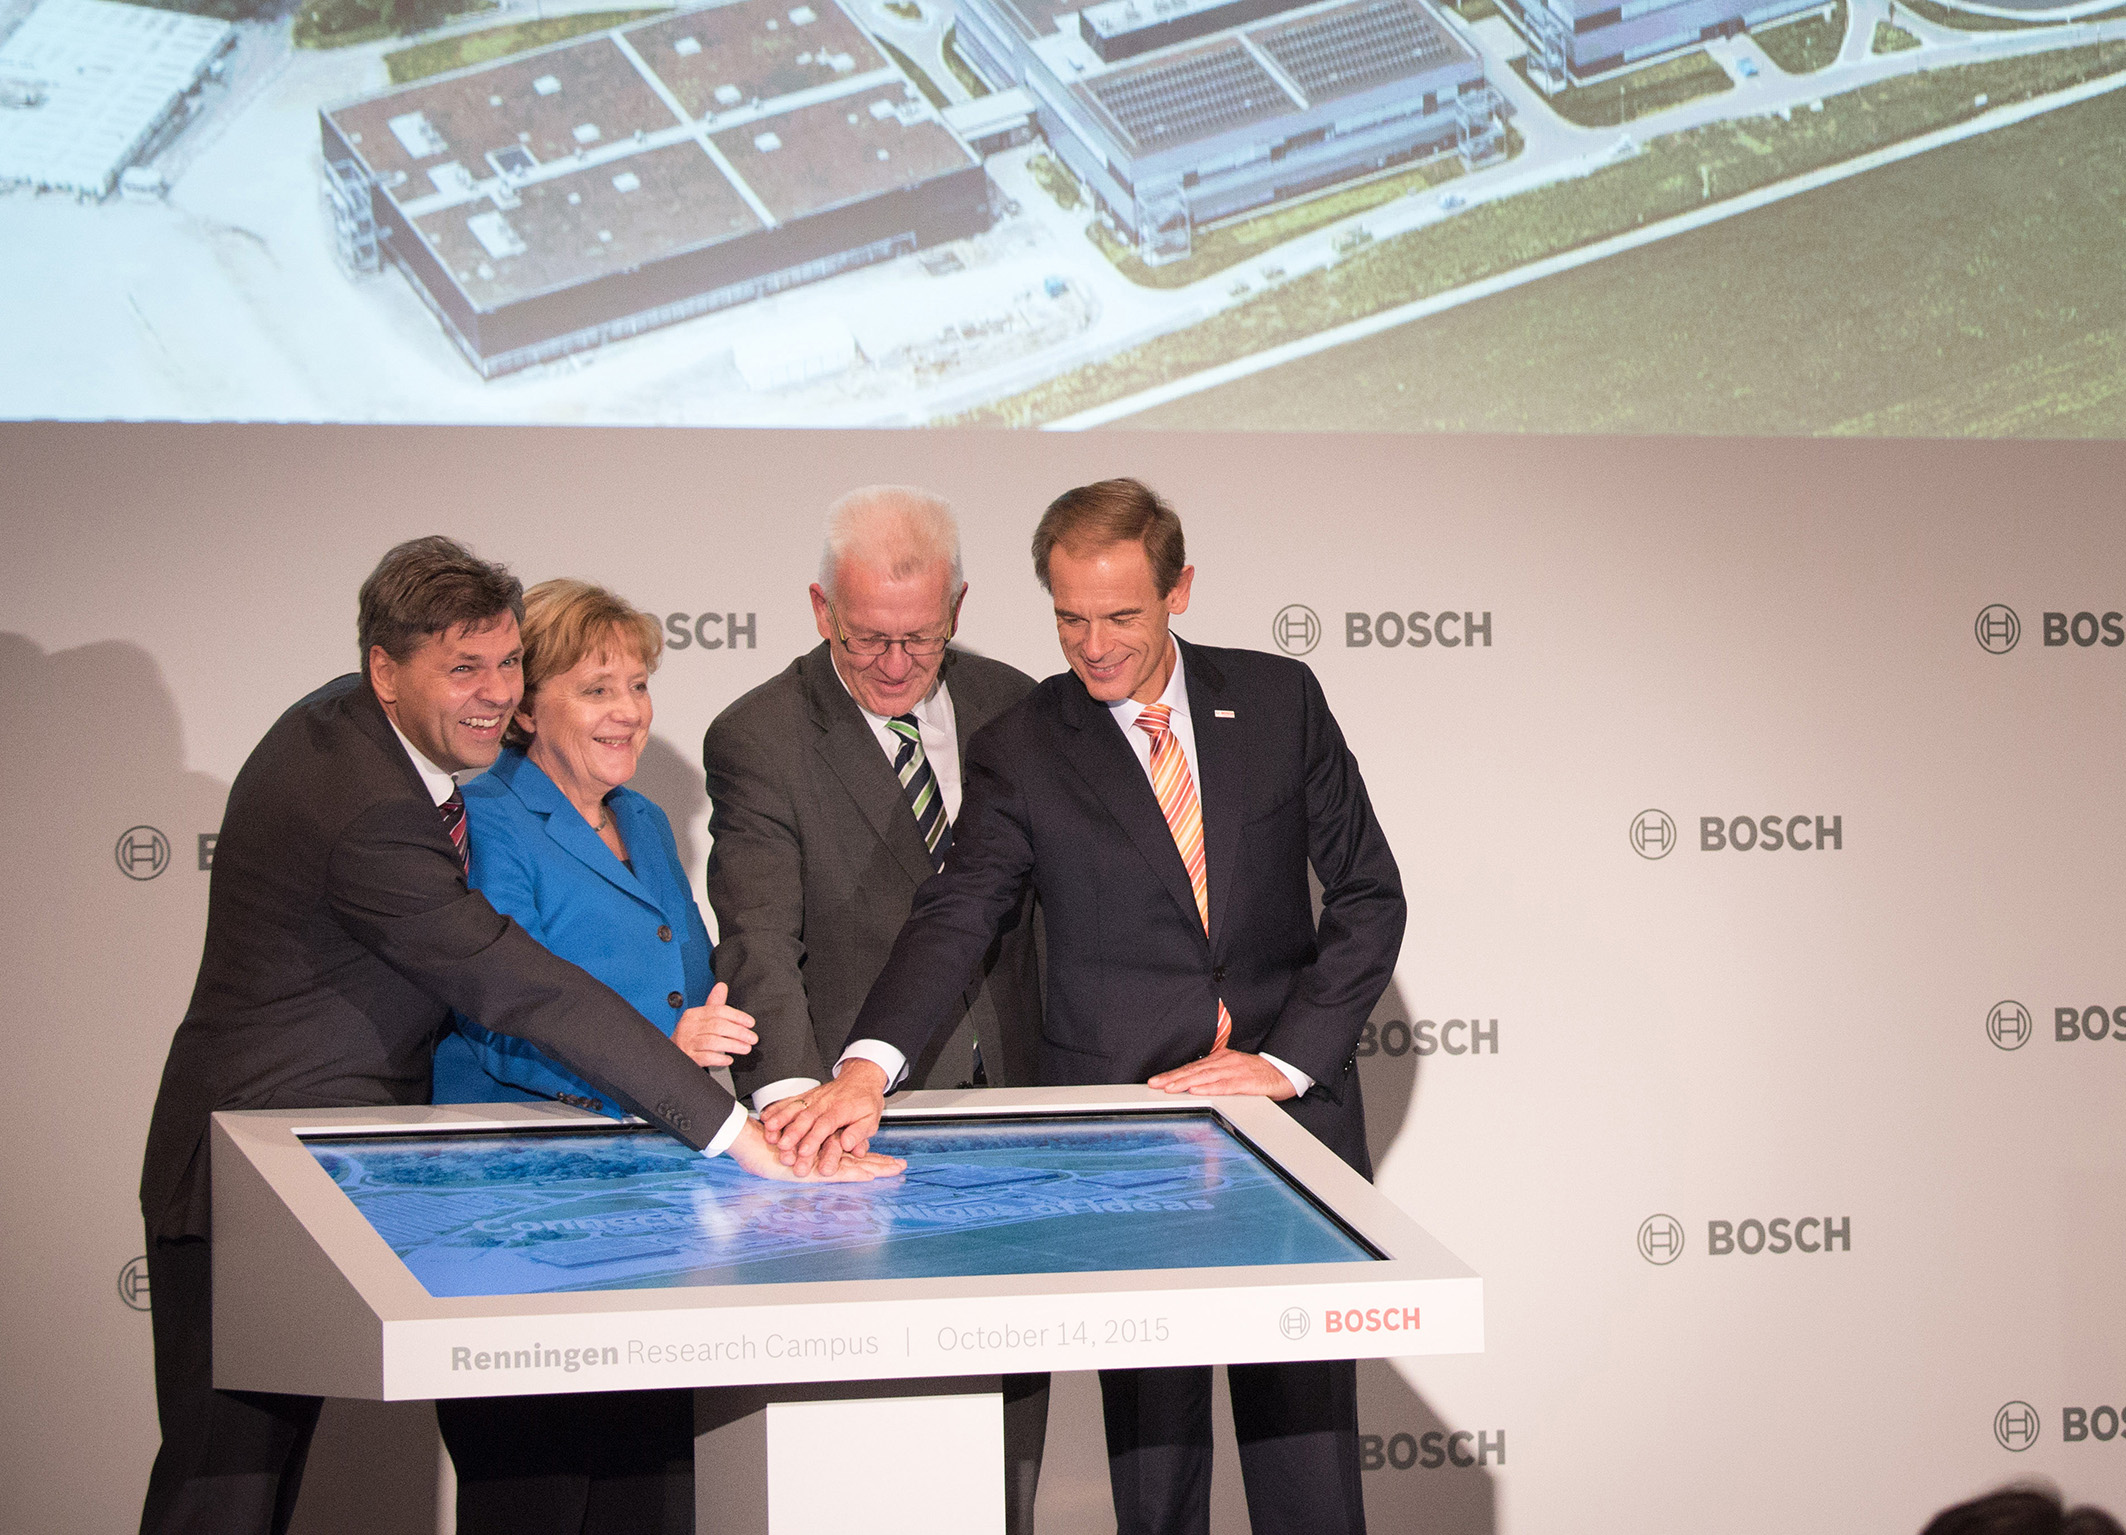 Centro di tecnologia e innovazione -  Bosch inaugura ufficialmente il nuovo campus di ricerca a Renningen